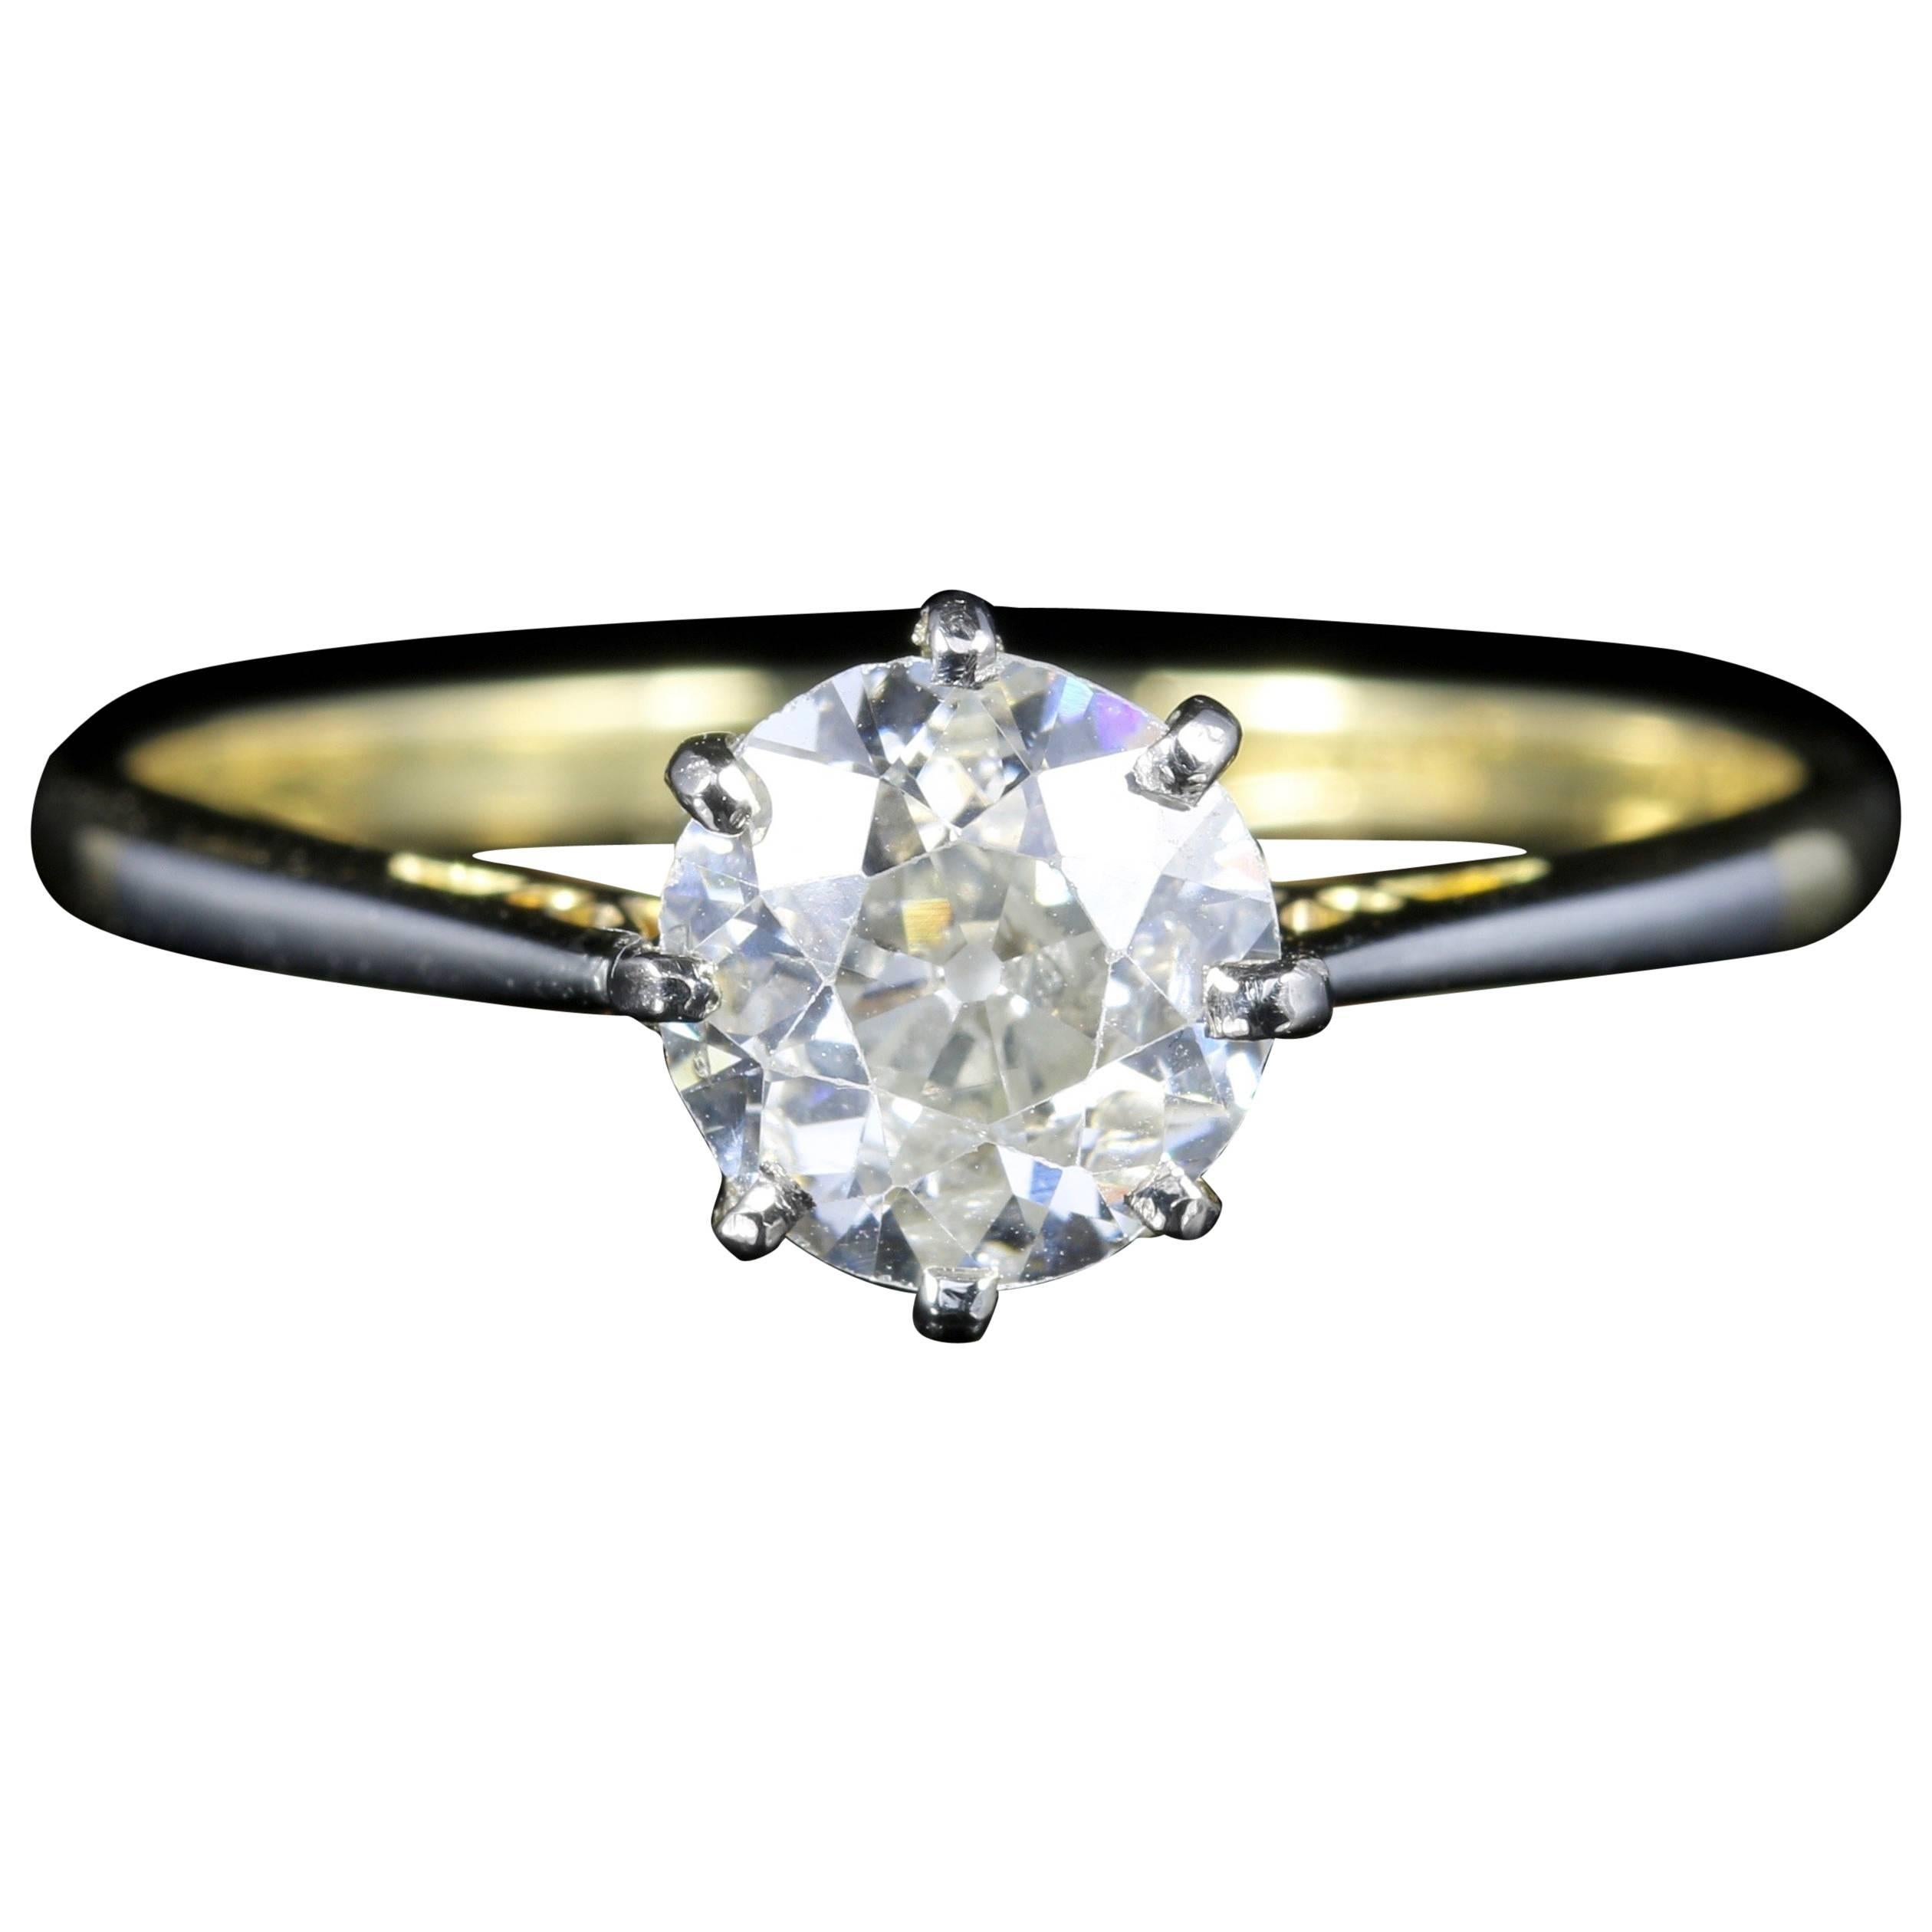 Antique Victorian Diamond Engagement Ring Solitaire 1.30 Carat, circa 1900